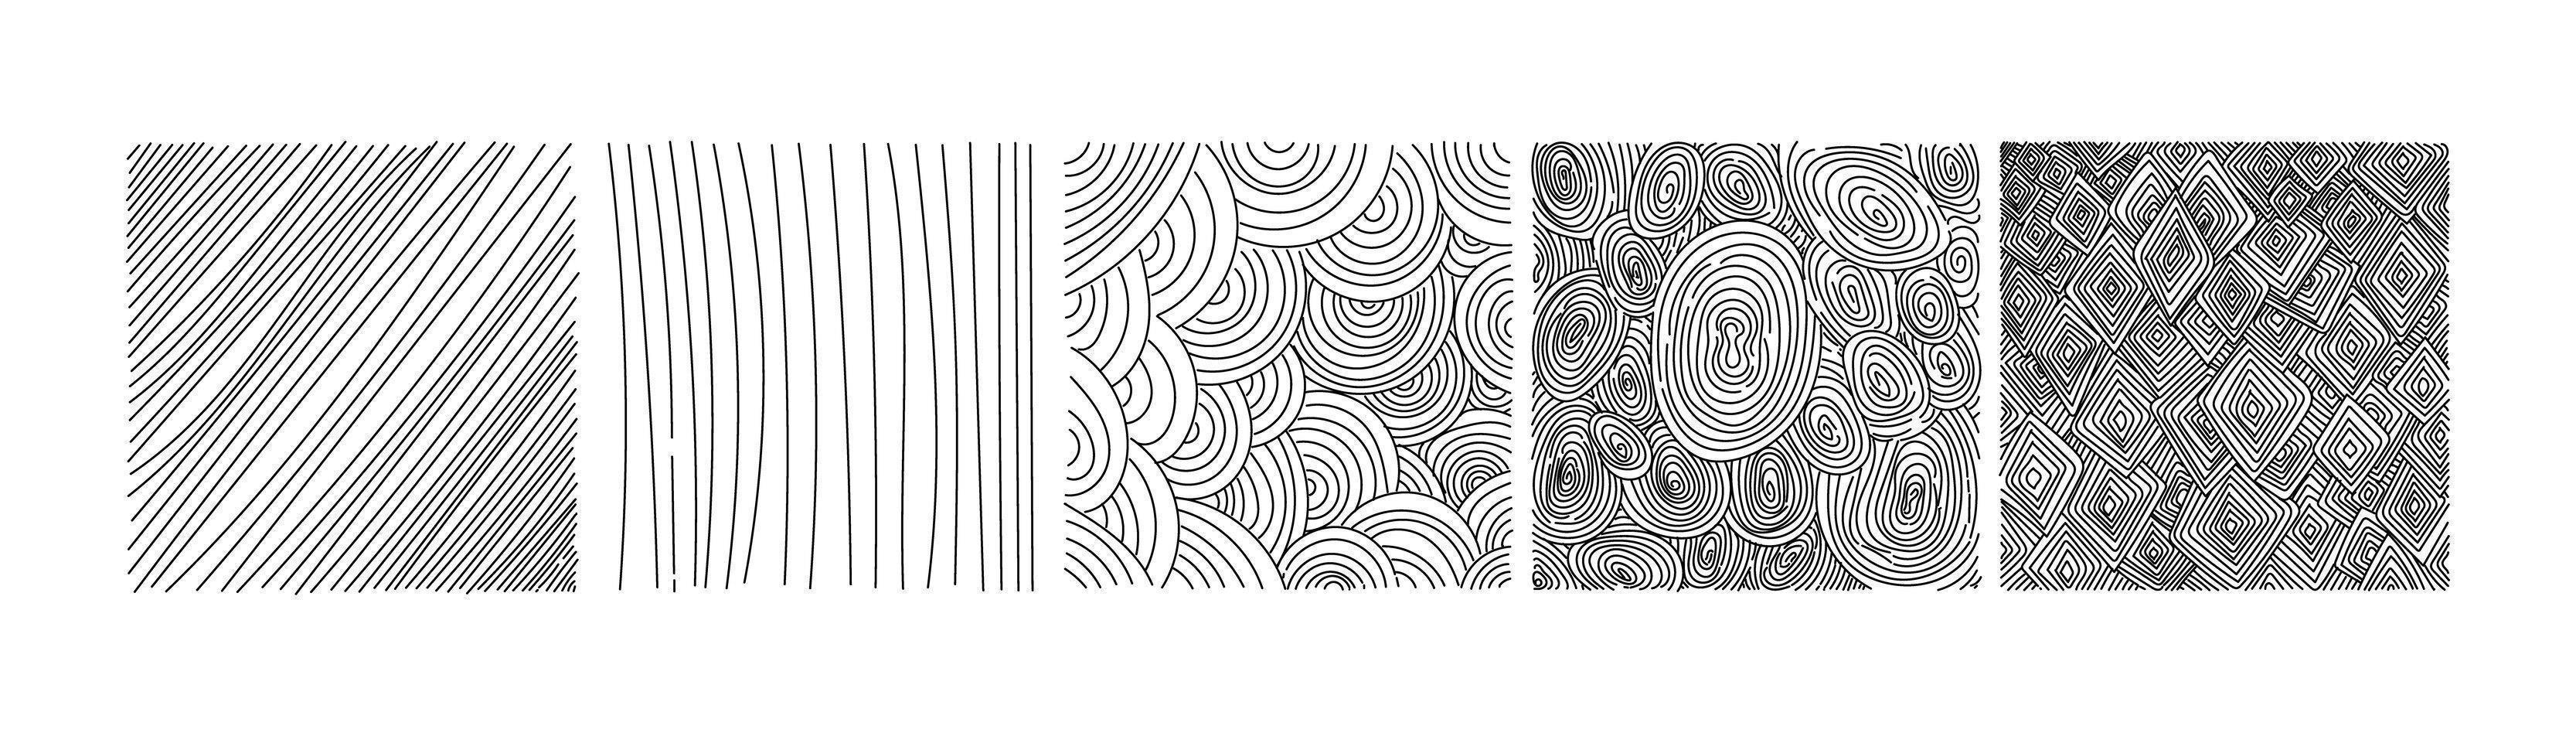 een reeks vierkante abstracte achtergronden of patronen. handgetekende doodles. vlekken, zigzaglijnen, vloeiende rondingen, lijnen. moderne grillige vectorillustraties. posters, badge-sjablonen voor sociale netwerken. vector